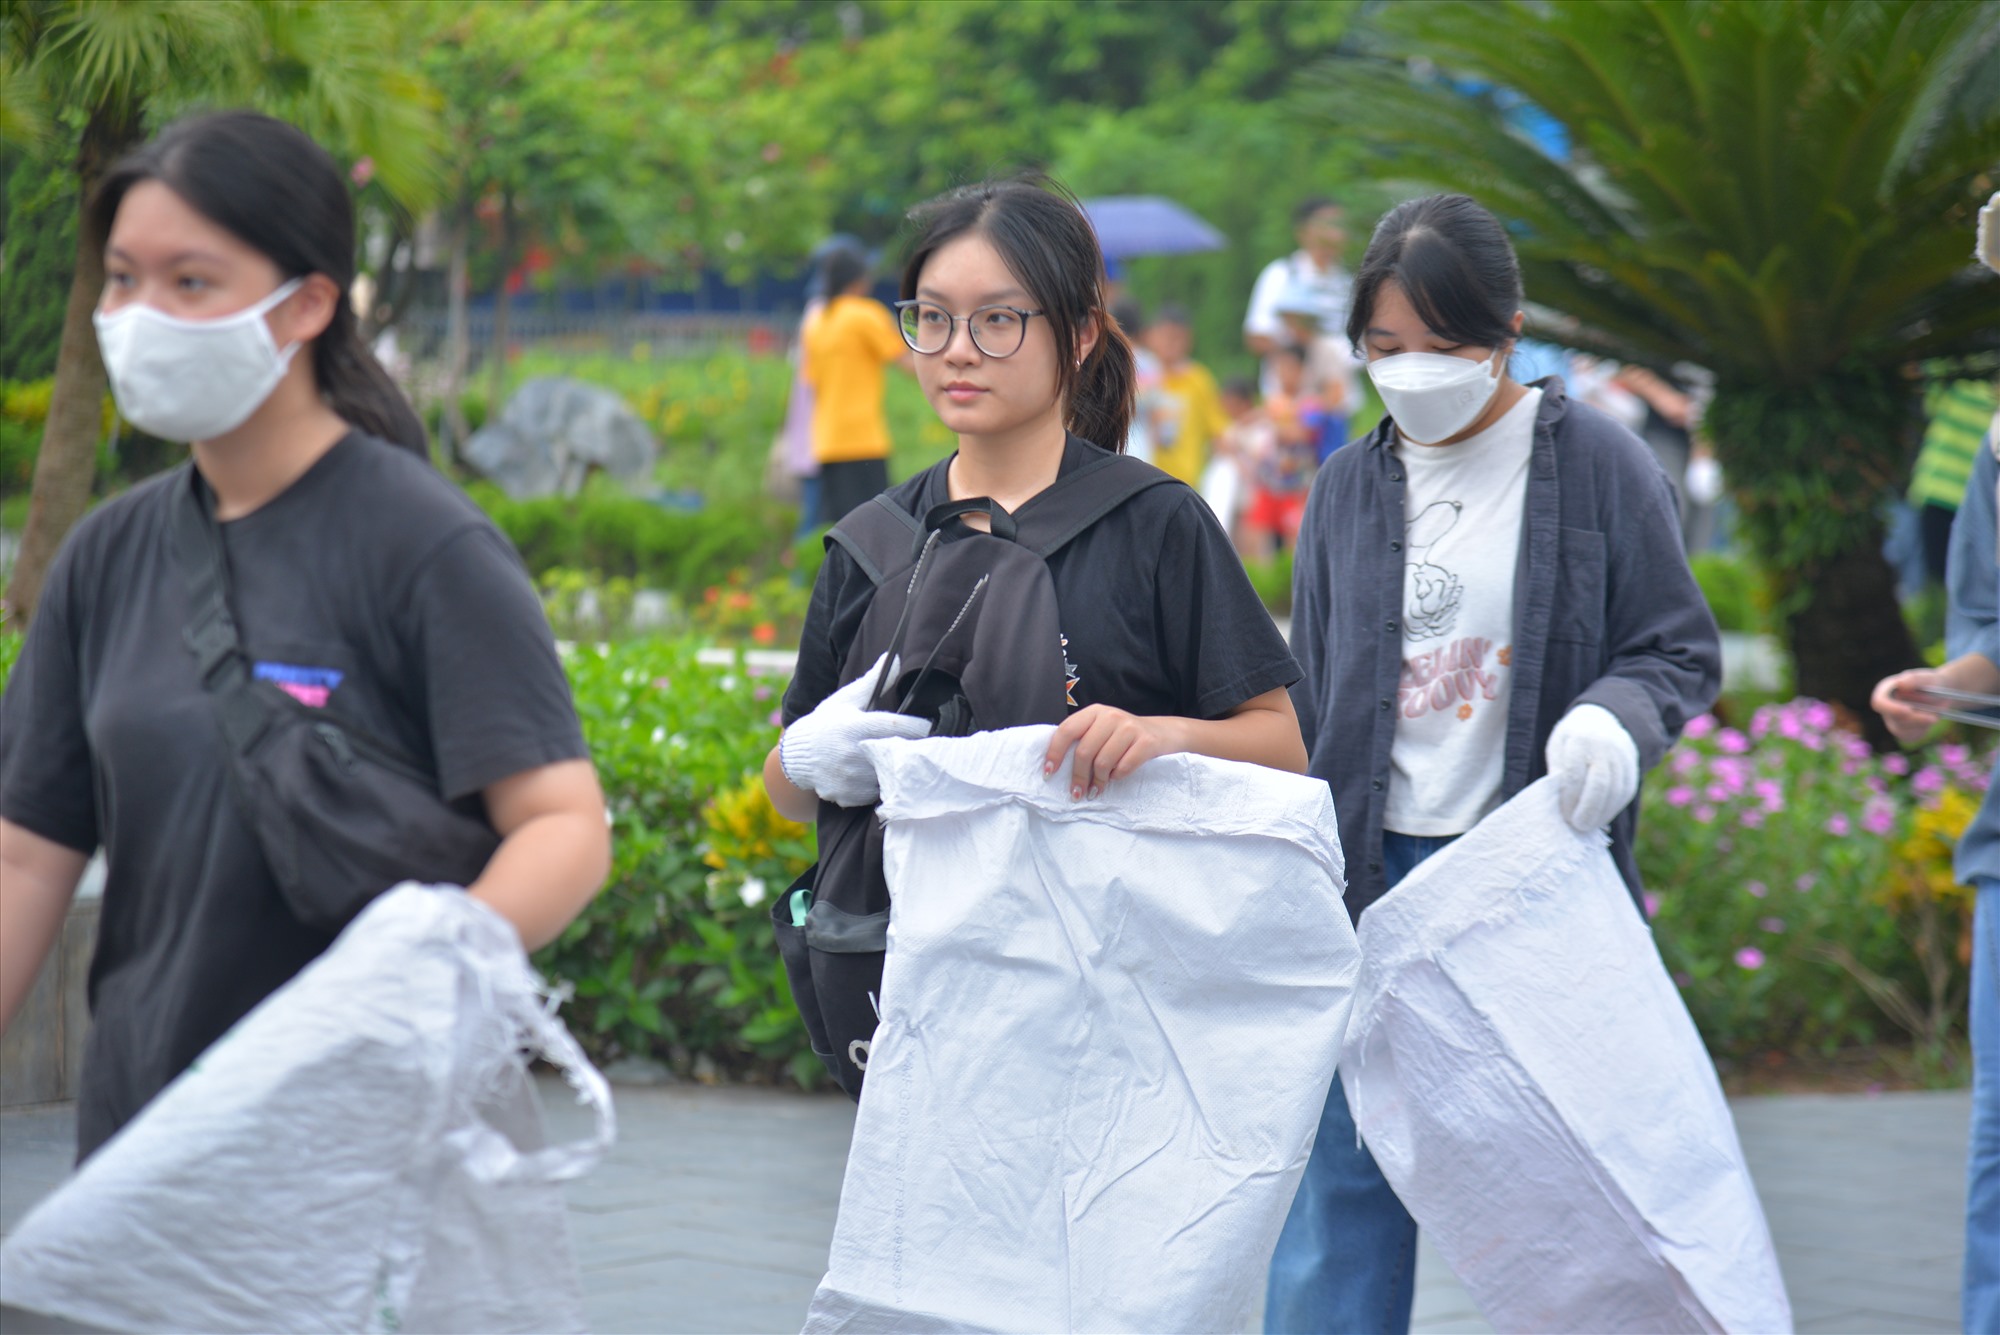 Mỗi tình nguyện viên được phát bao tay, kẹp sắt, bao tải trước khi tiến hành nhặt rác. Ảnh: Ban tổ chức 